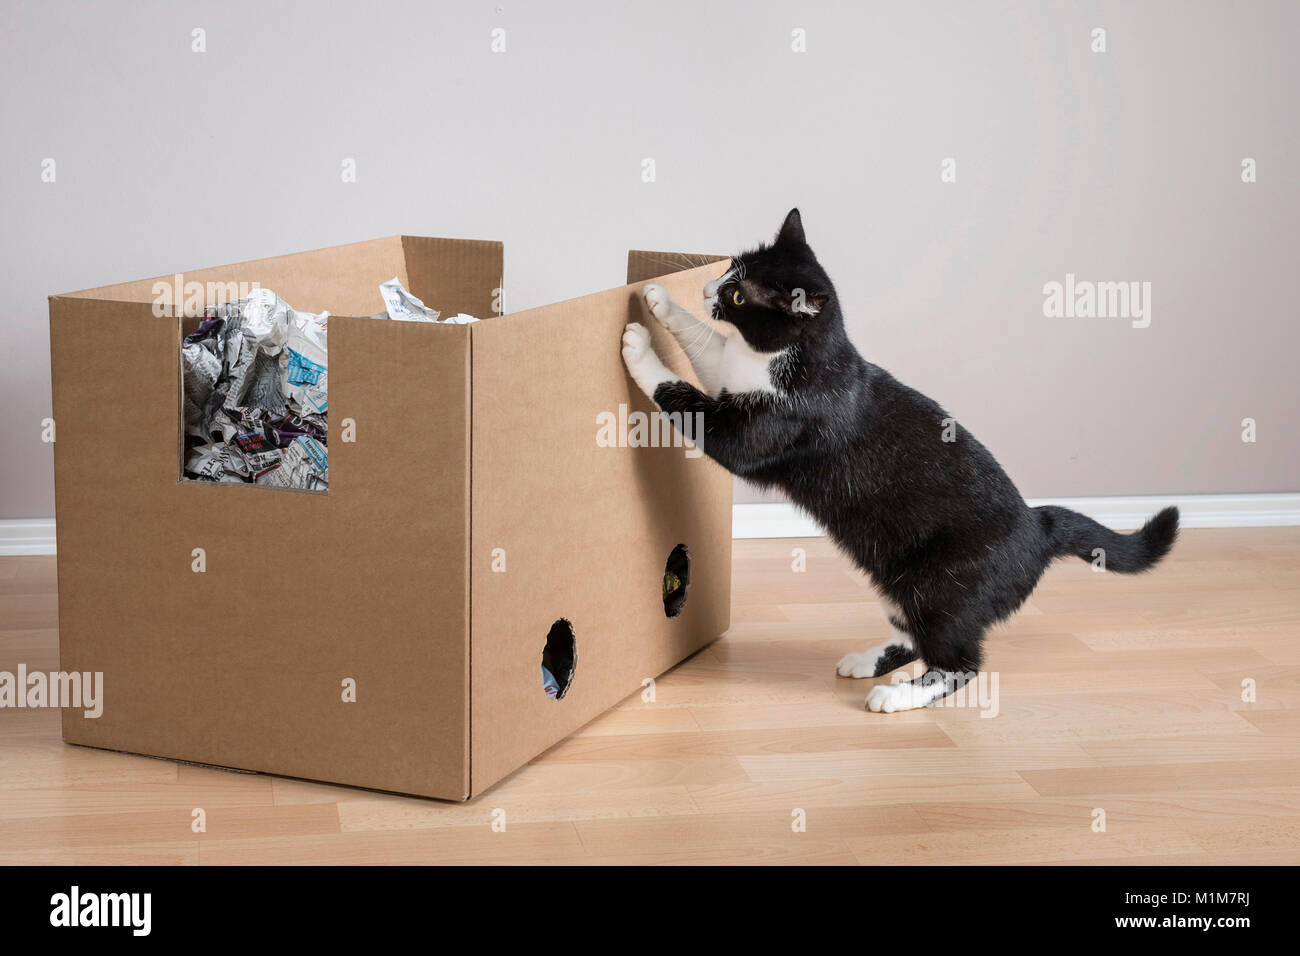 Nacionales Cat. Tuxedo cat investigando una caja llena de papel. Alemania Foto de stock